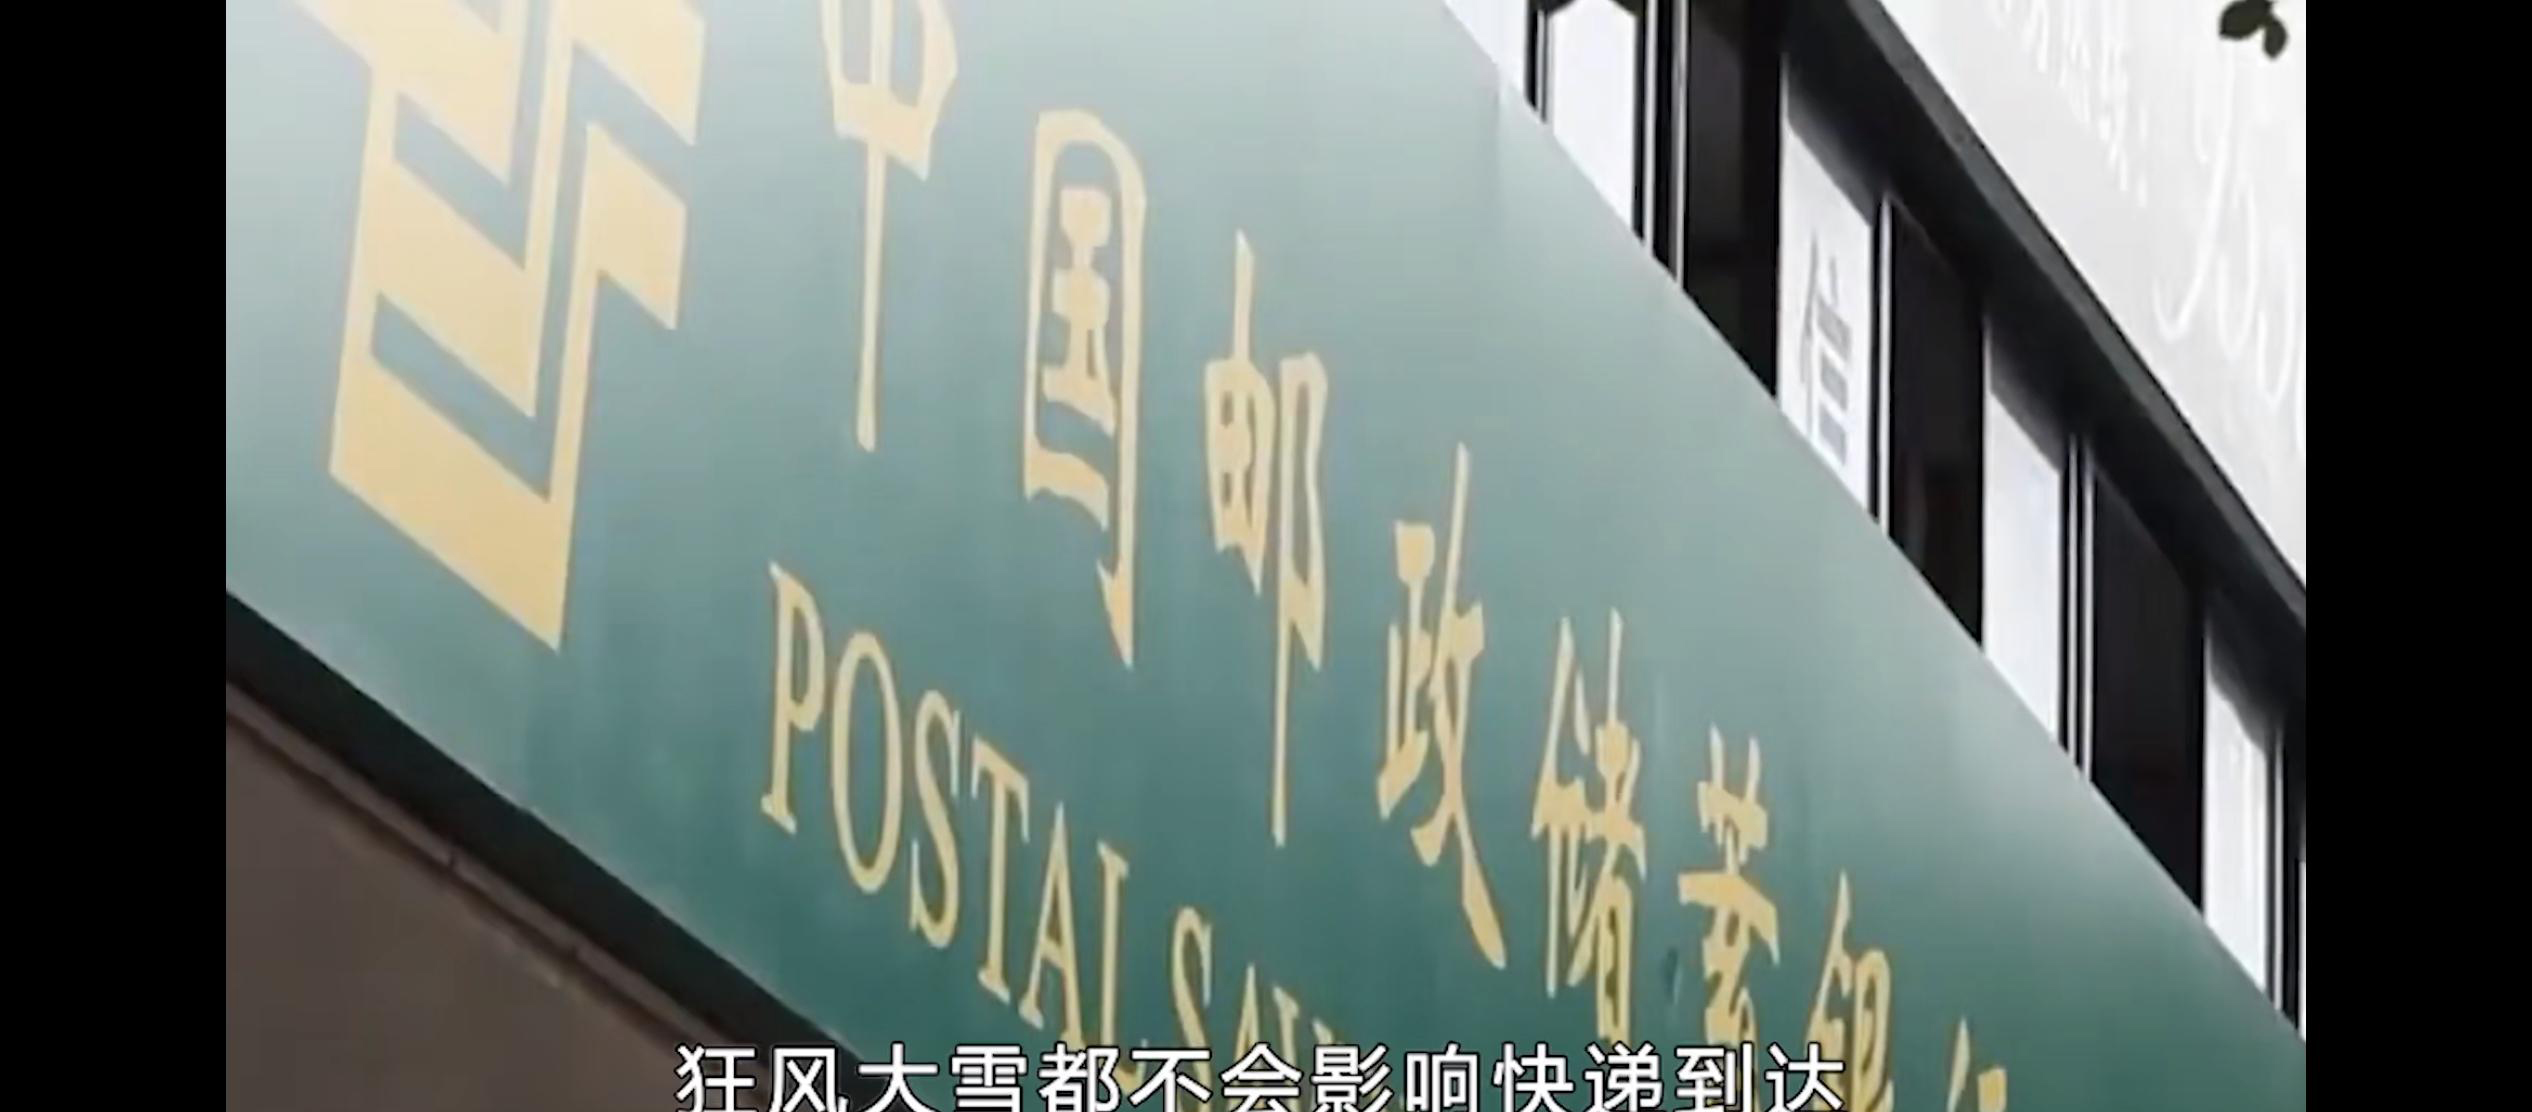 这里是中国邮政